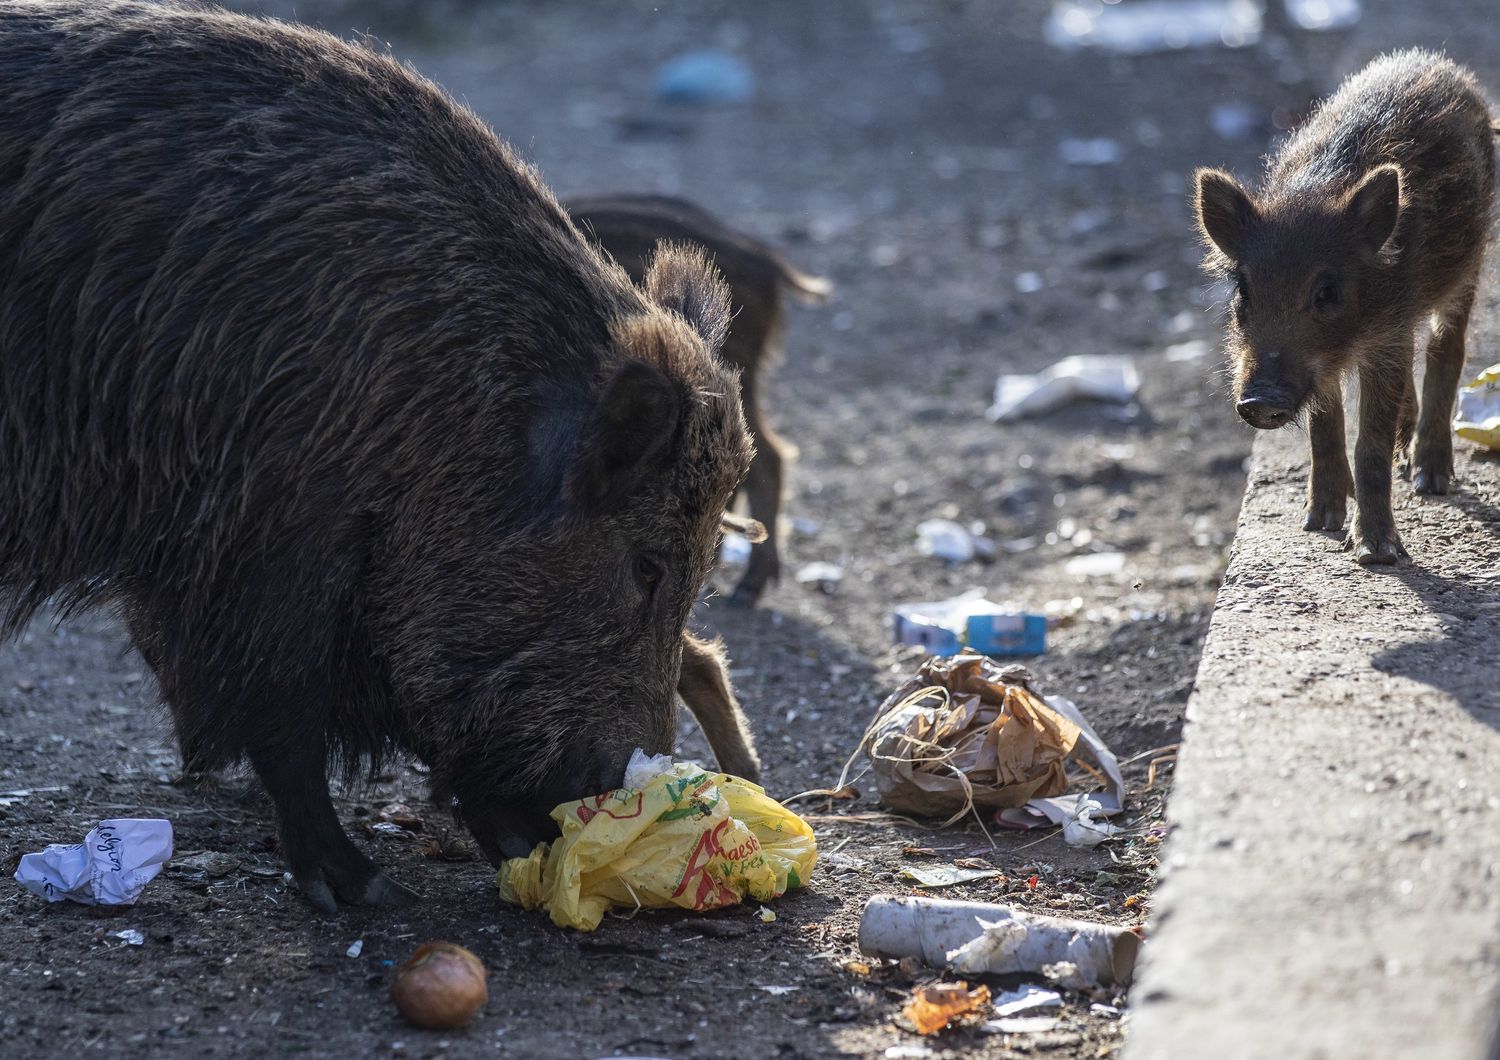 Cinghiali a Roma cercano cibo tra i cassonetti dei rifiuti&nbsp;